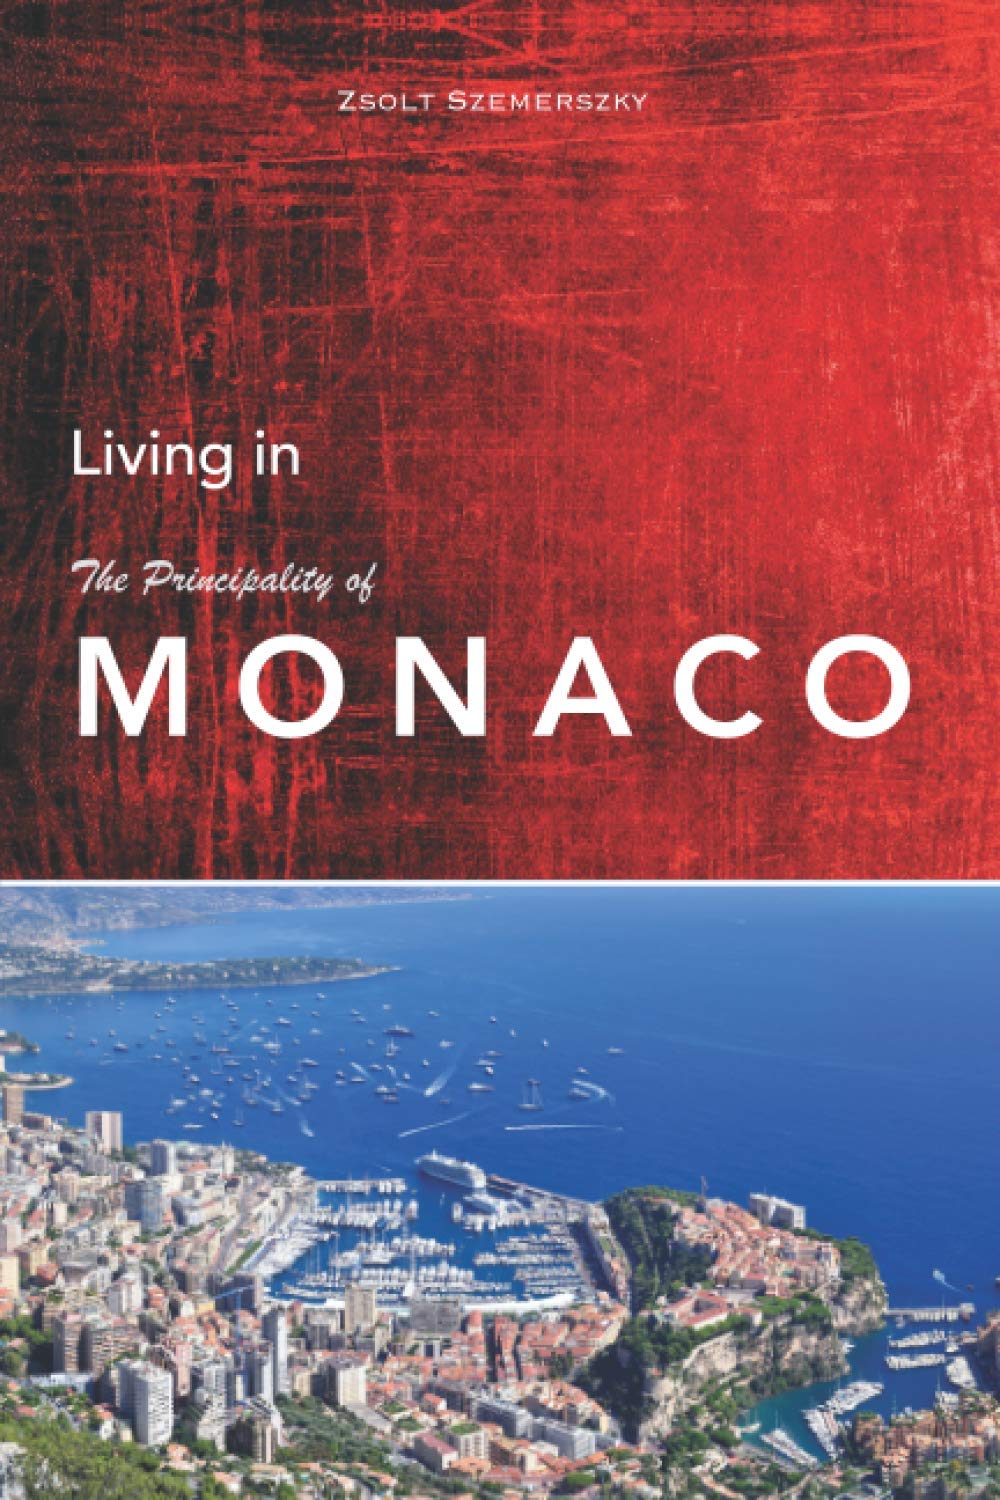 monaco travel books